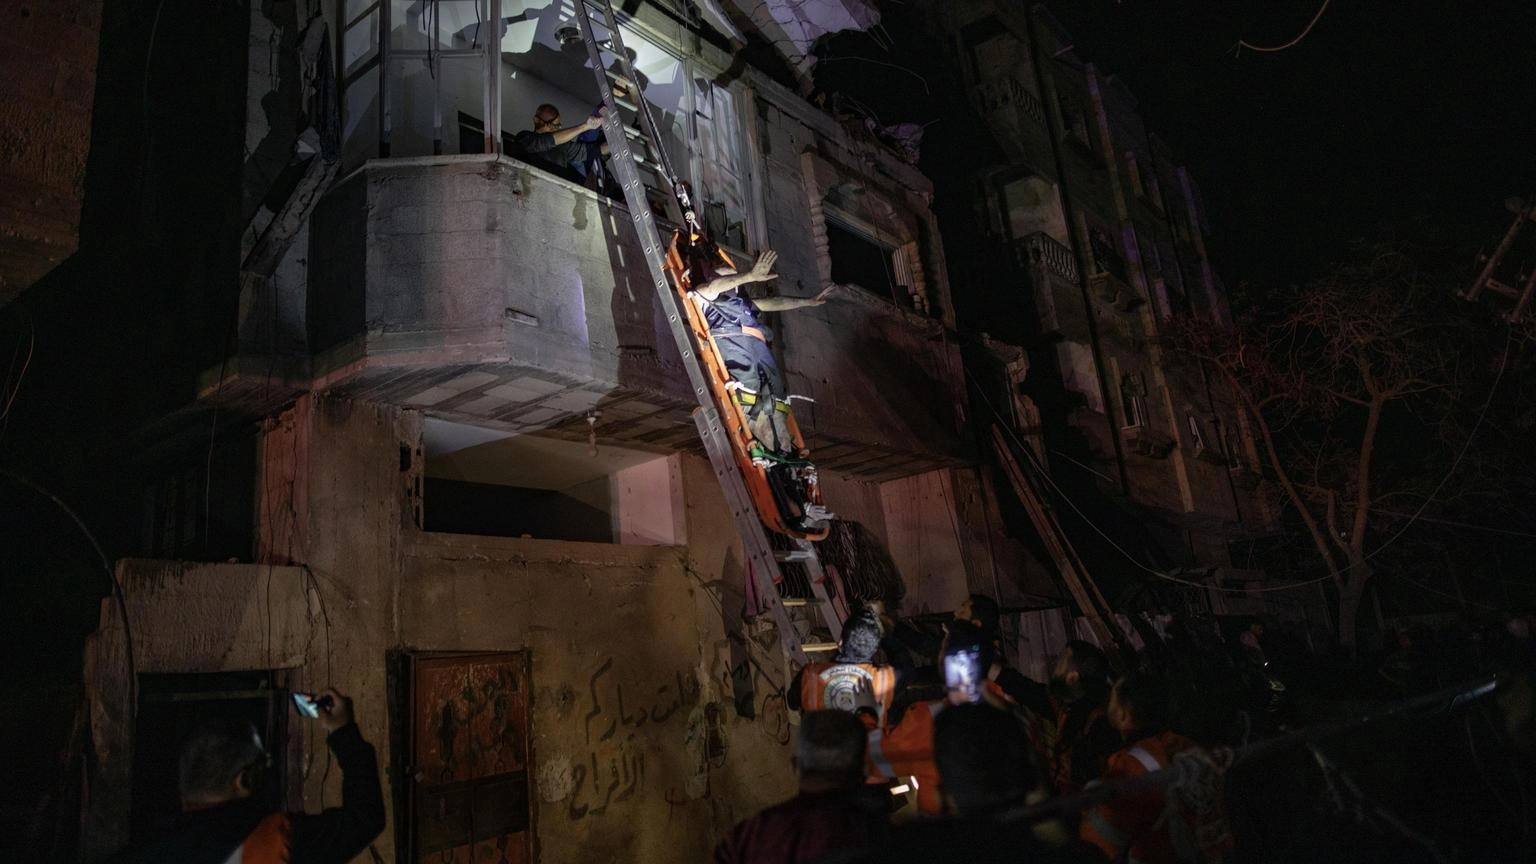 Raid israeliano contro una casa a Rafah, uccise 9 persone